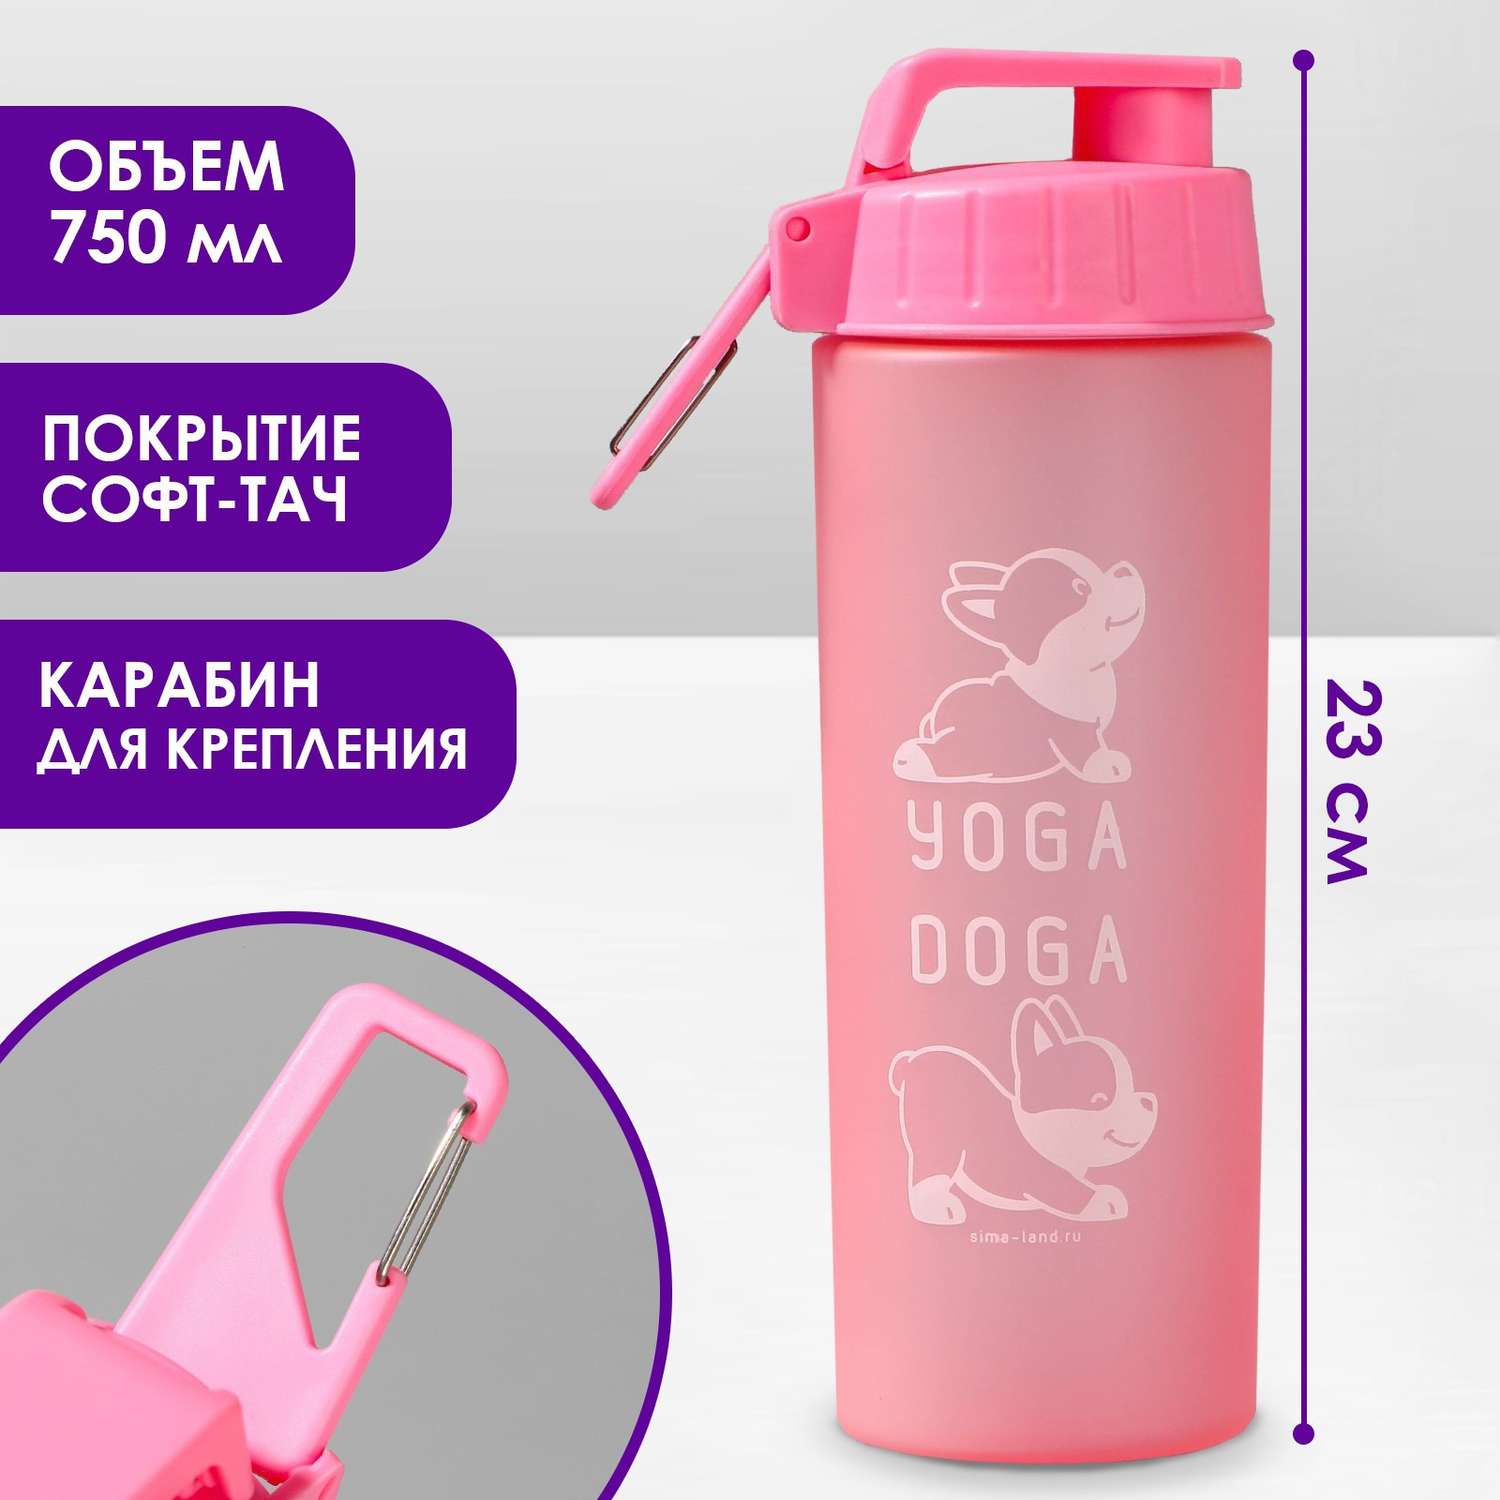 Прогулочная поилка Пушистое счастье для собак «Йога» 23х7.5х7.5 см 750 мл розовая - фото 1